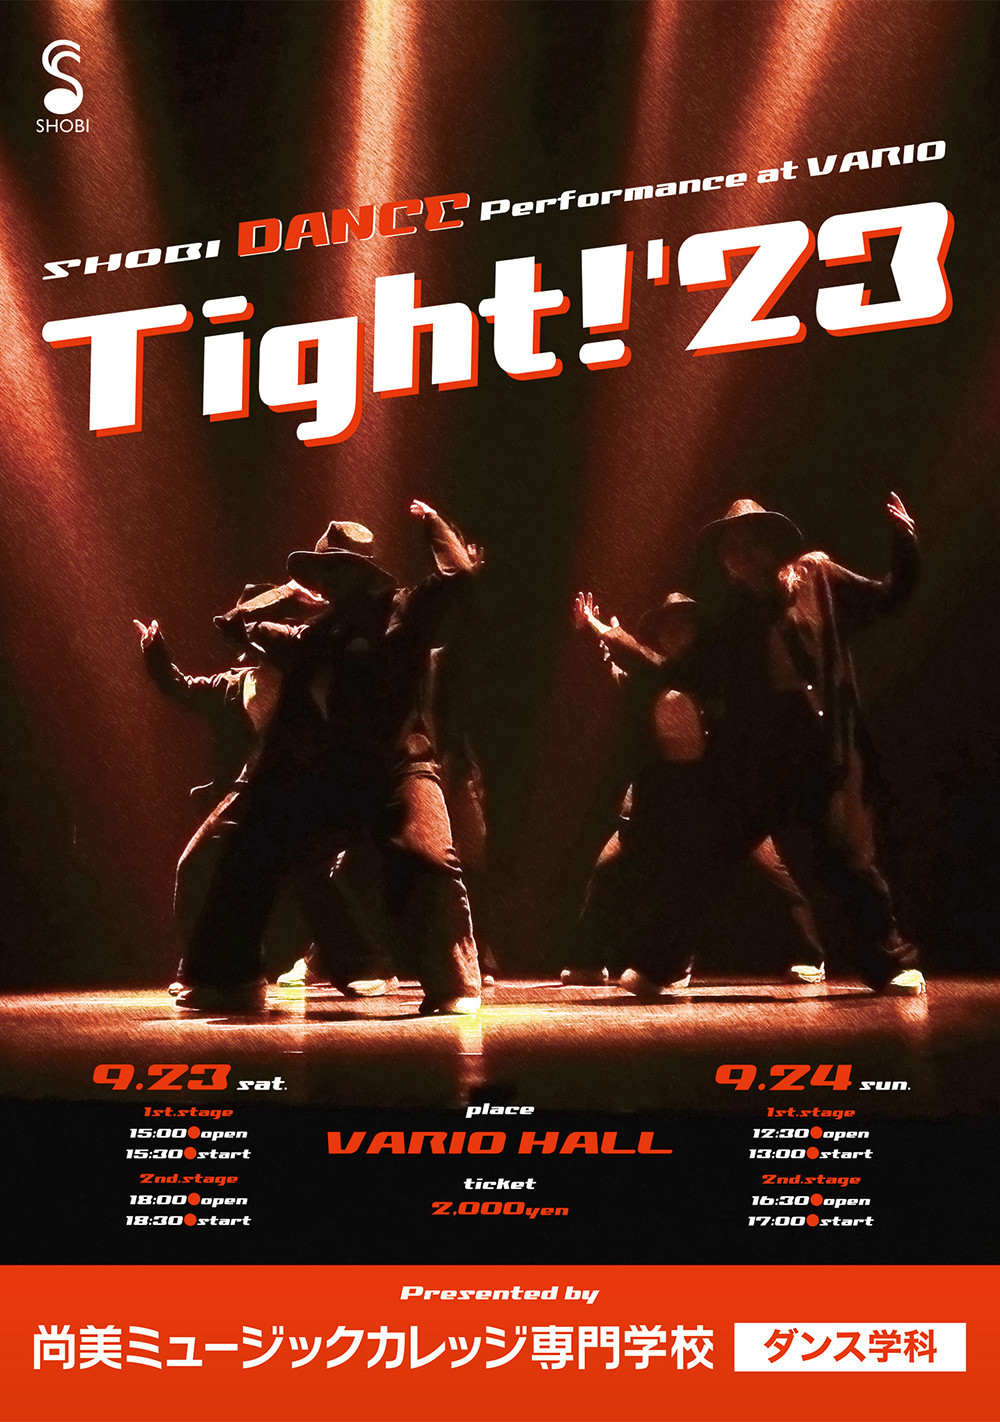 【9月23日・24日開催】SHOBI DANCE Performance at VARIO「Tight!'23」